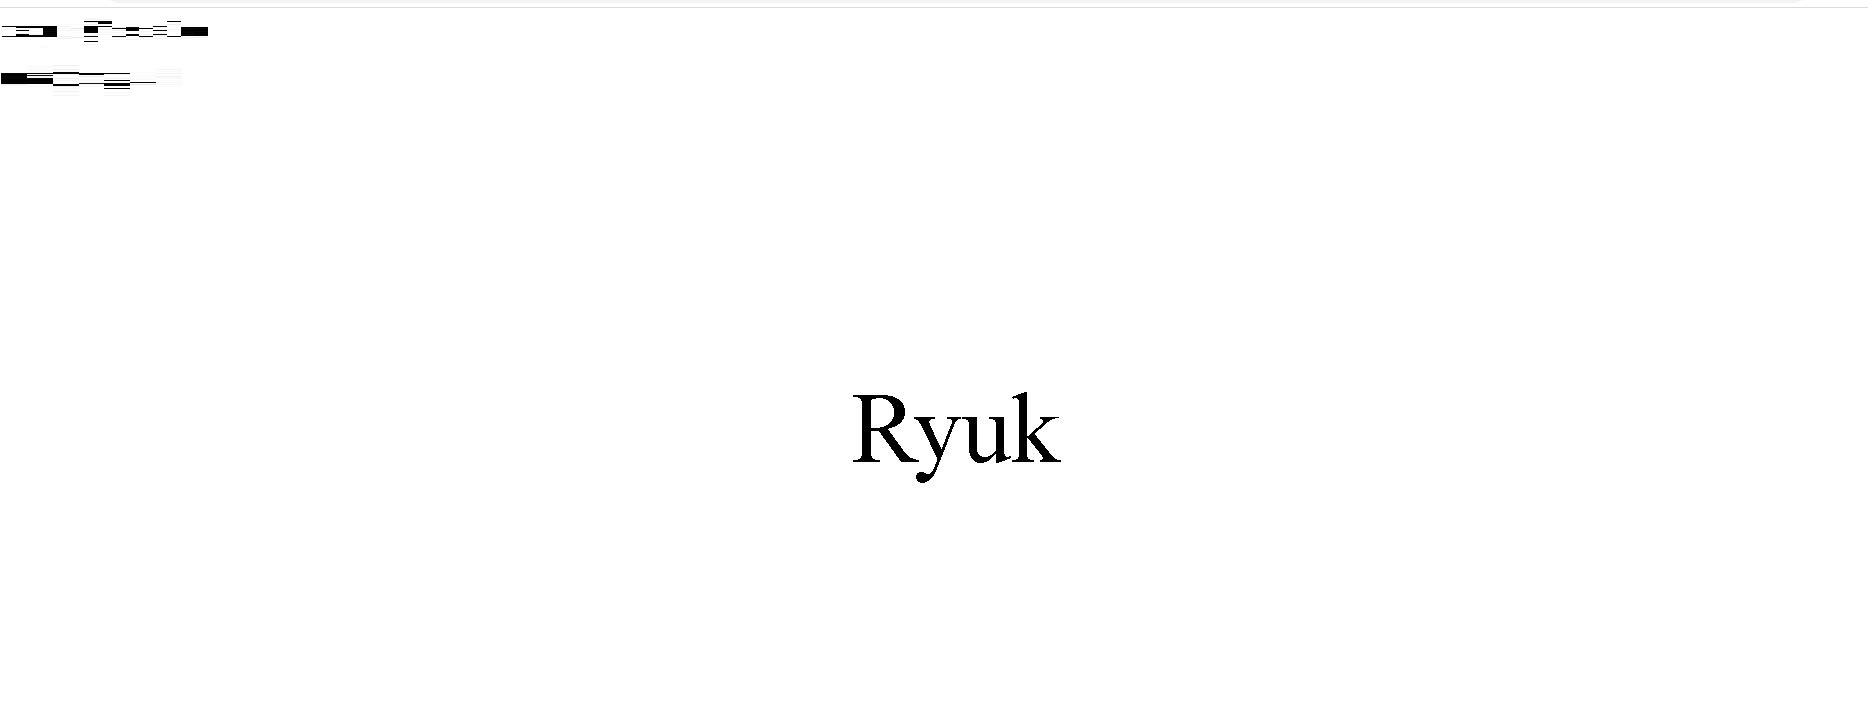 Ryuk HTML file